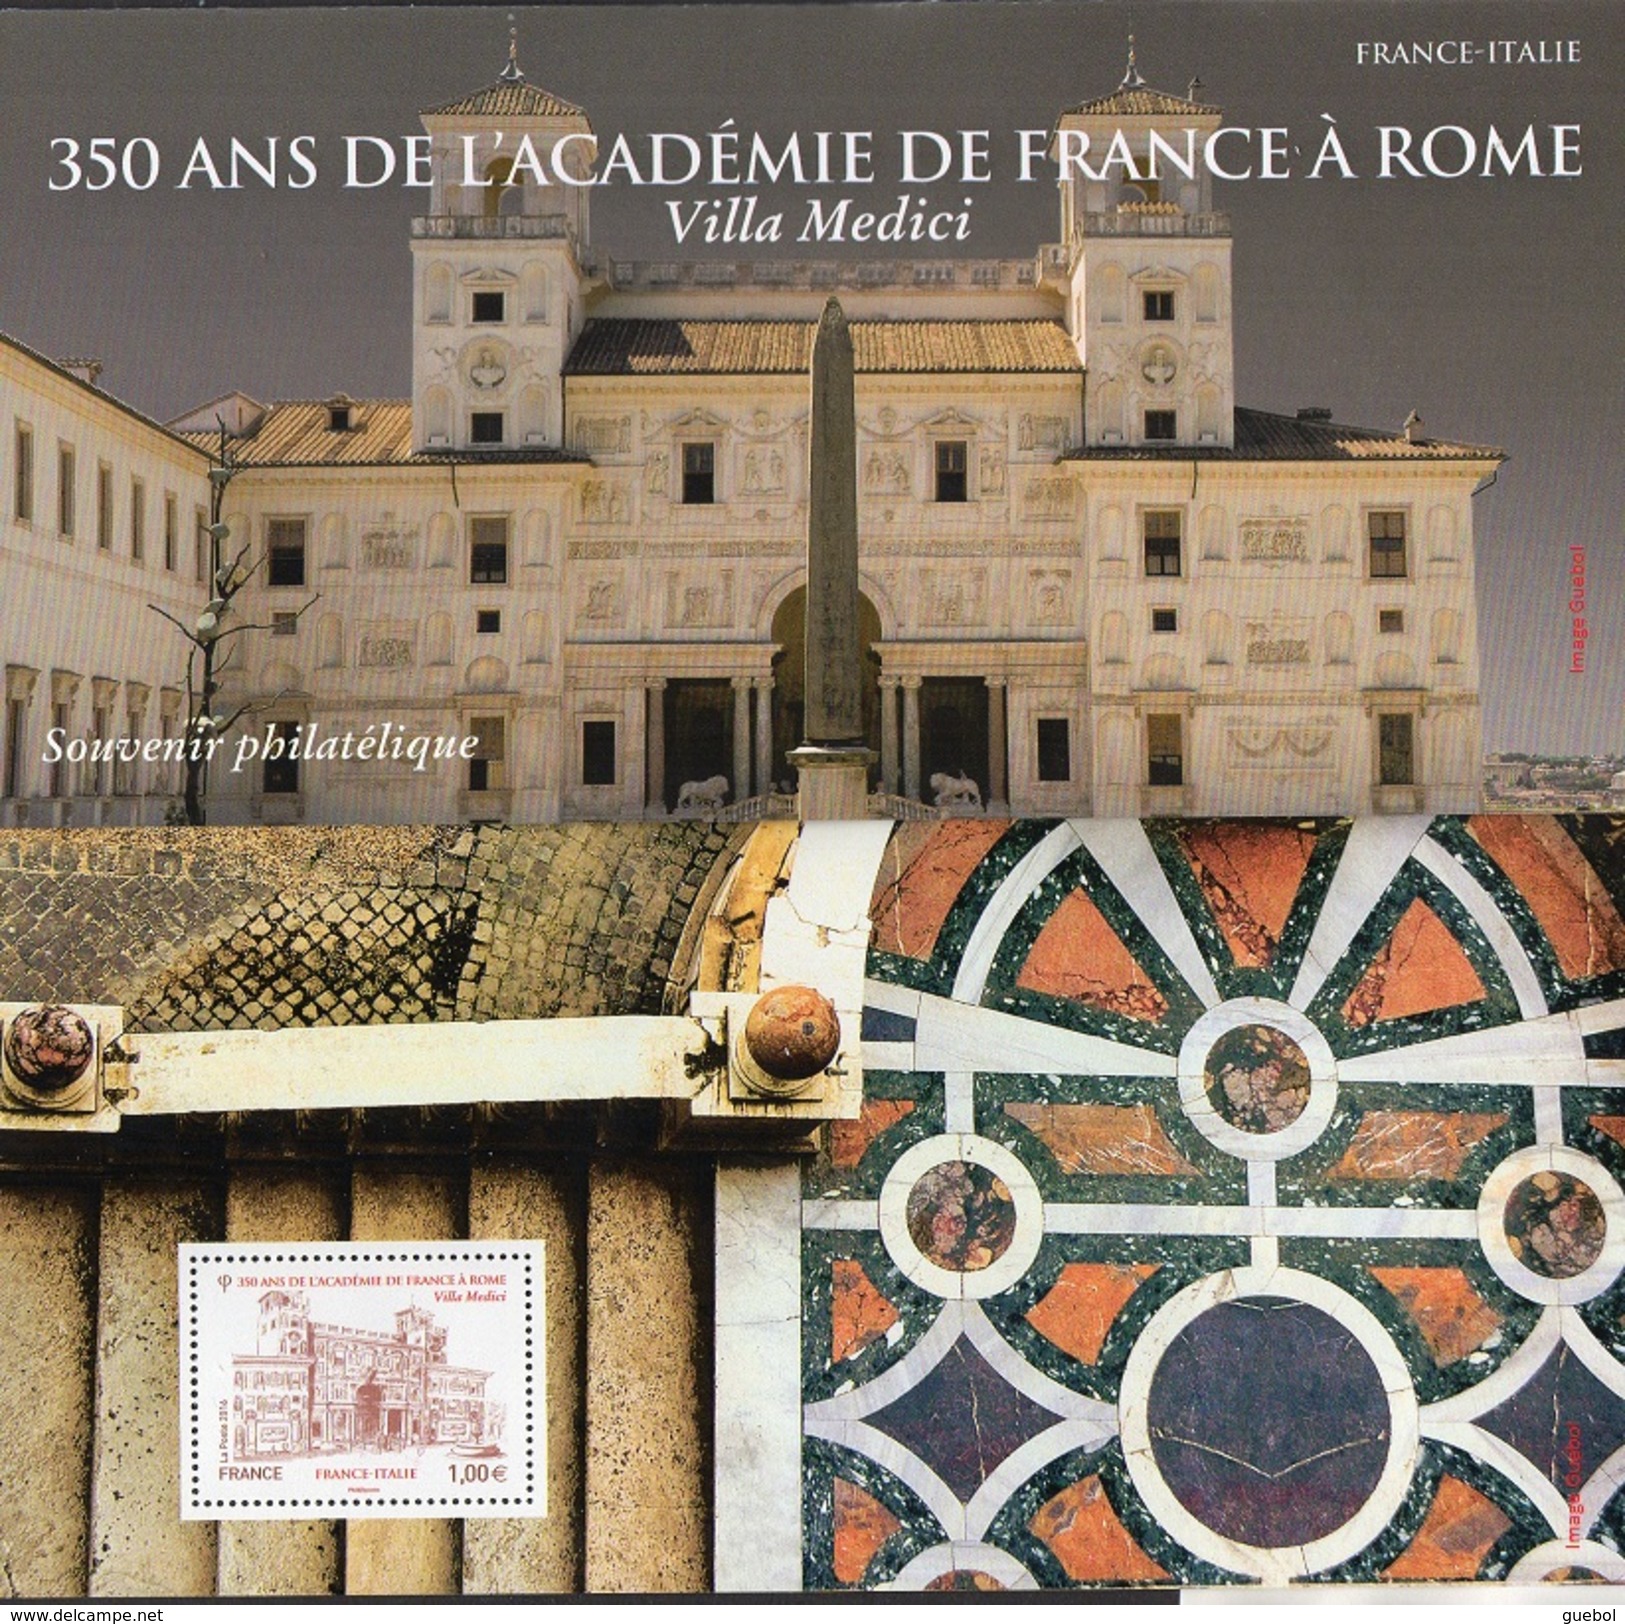 Emission 350 ans de l’Académie de France à Rome : Villa Medicis